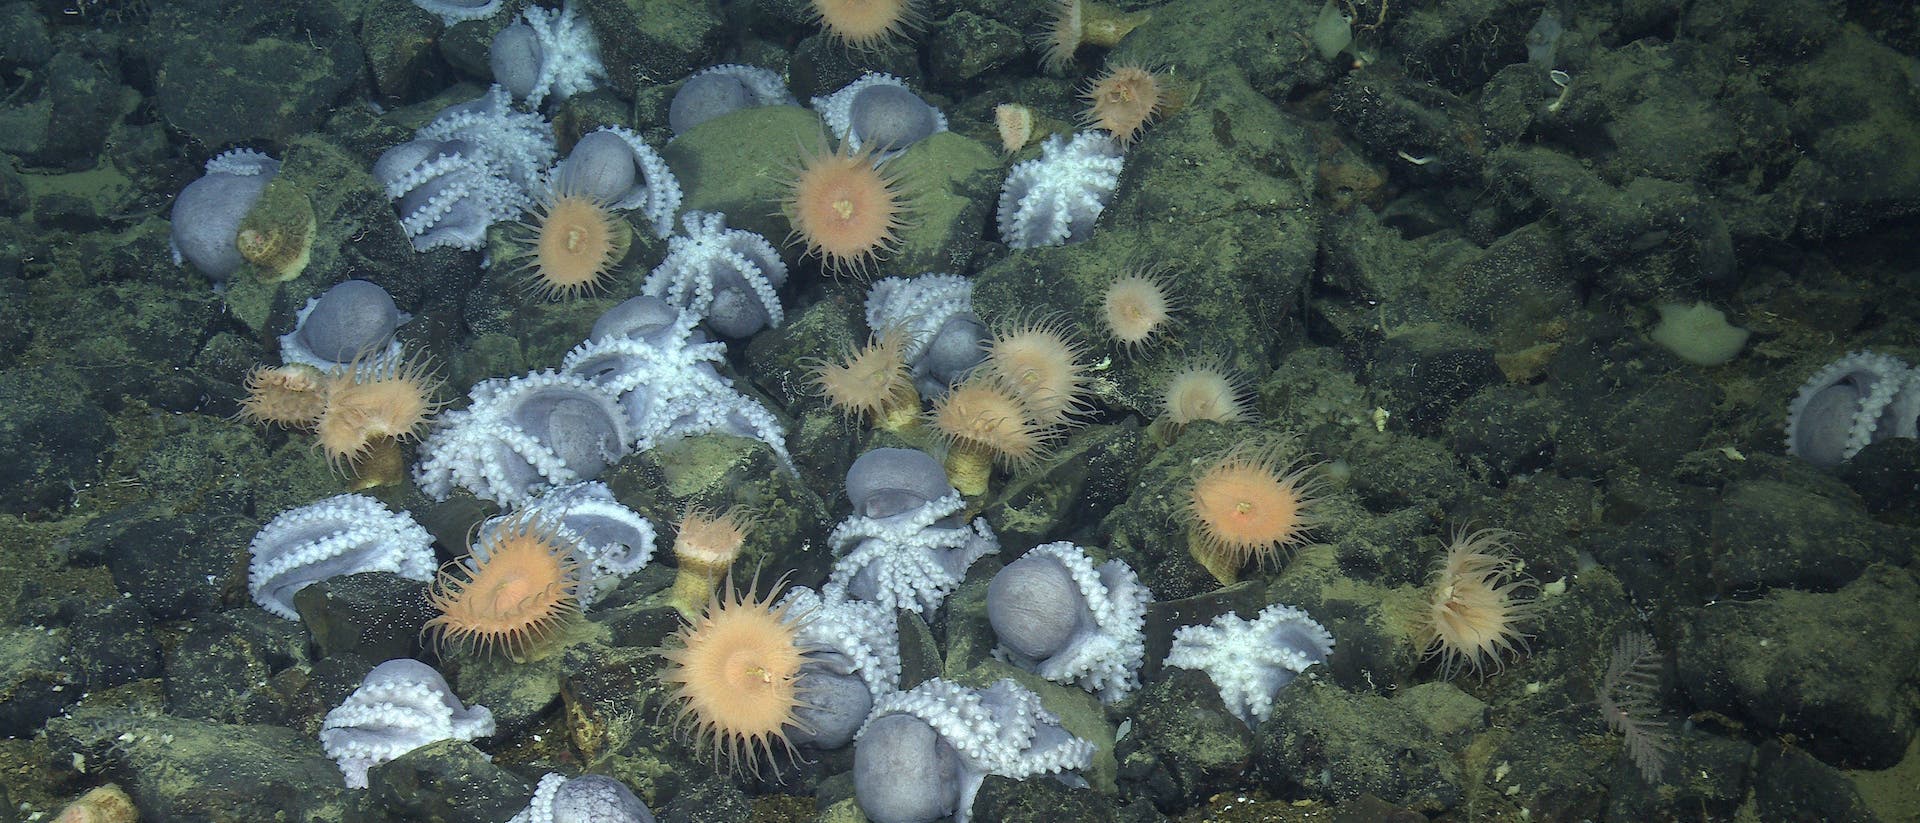 Zahlreiche Kraken versammeln sich auf dem Tiefseeboden, wo sie ihren Nachwuchs hüten.